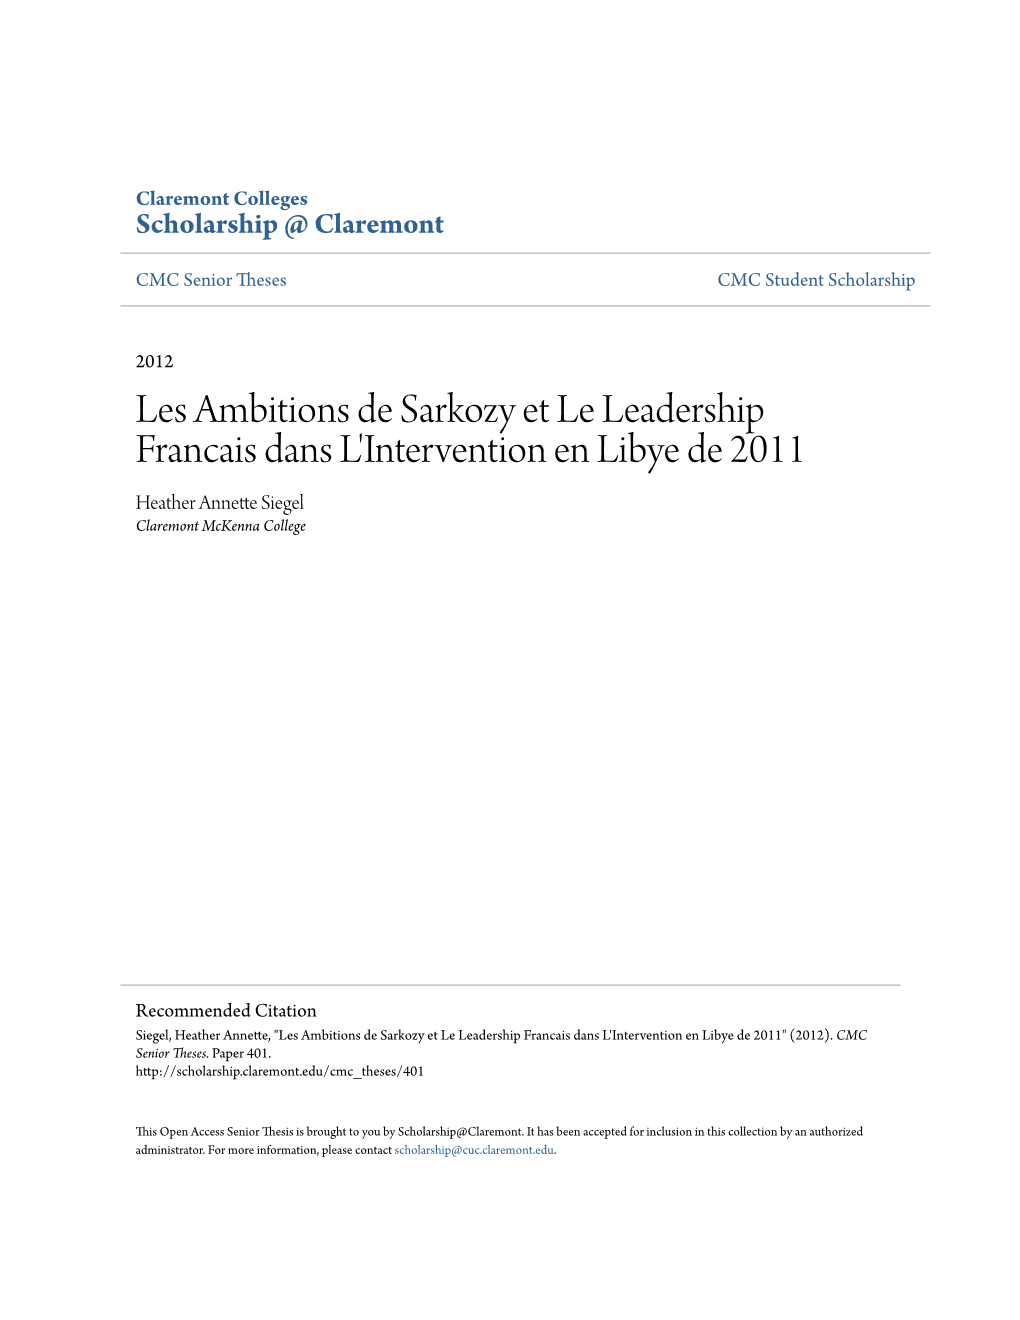 Les Ambitions De Sarkozy Et Le Leadership Francais Dans L'intervention En Libye De 2011 Heather Annette Siegel Claremont Mckenna College